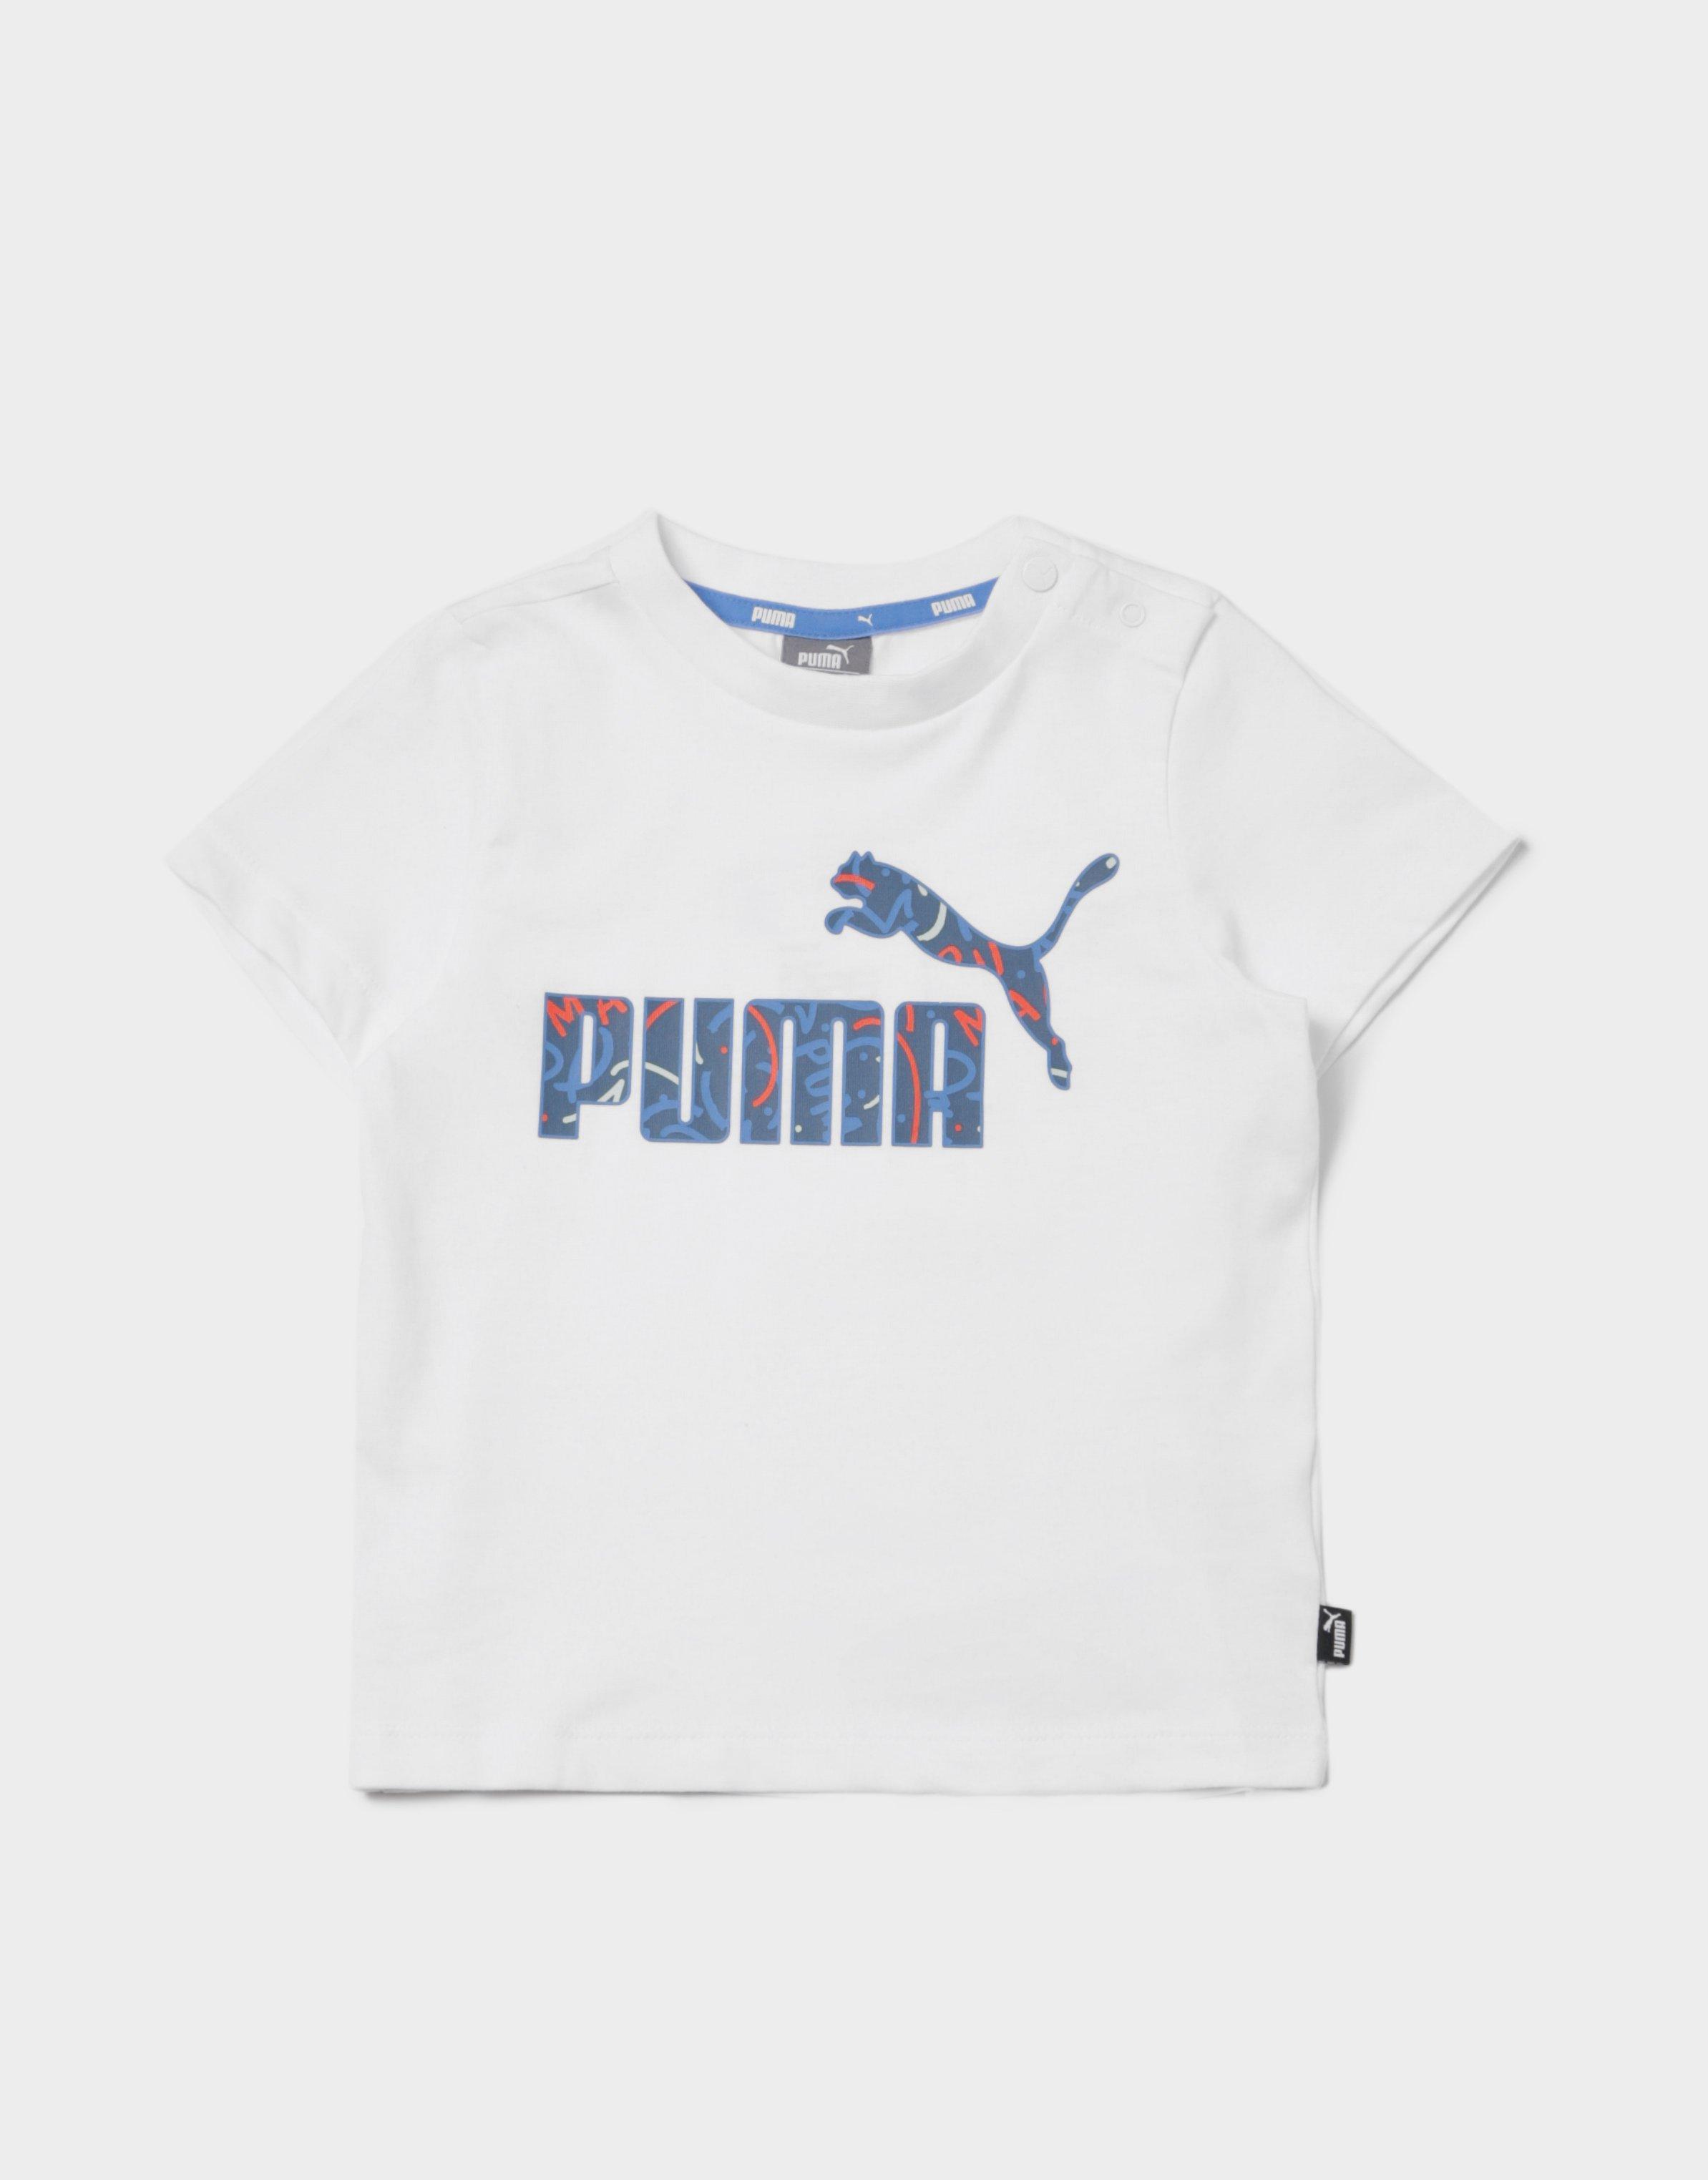 puma infant clothes